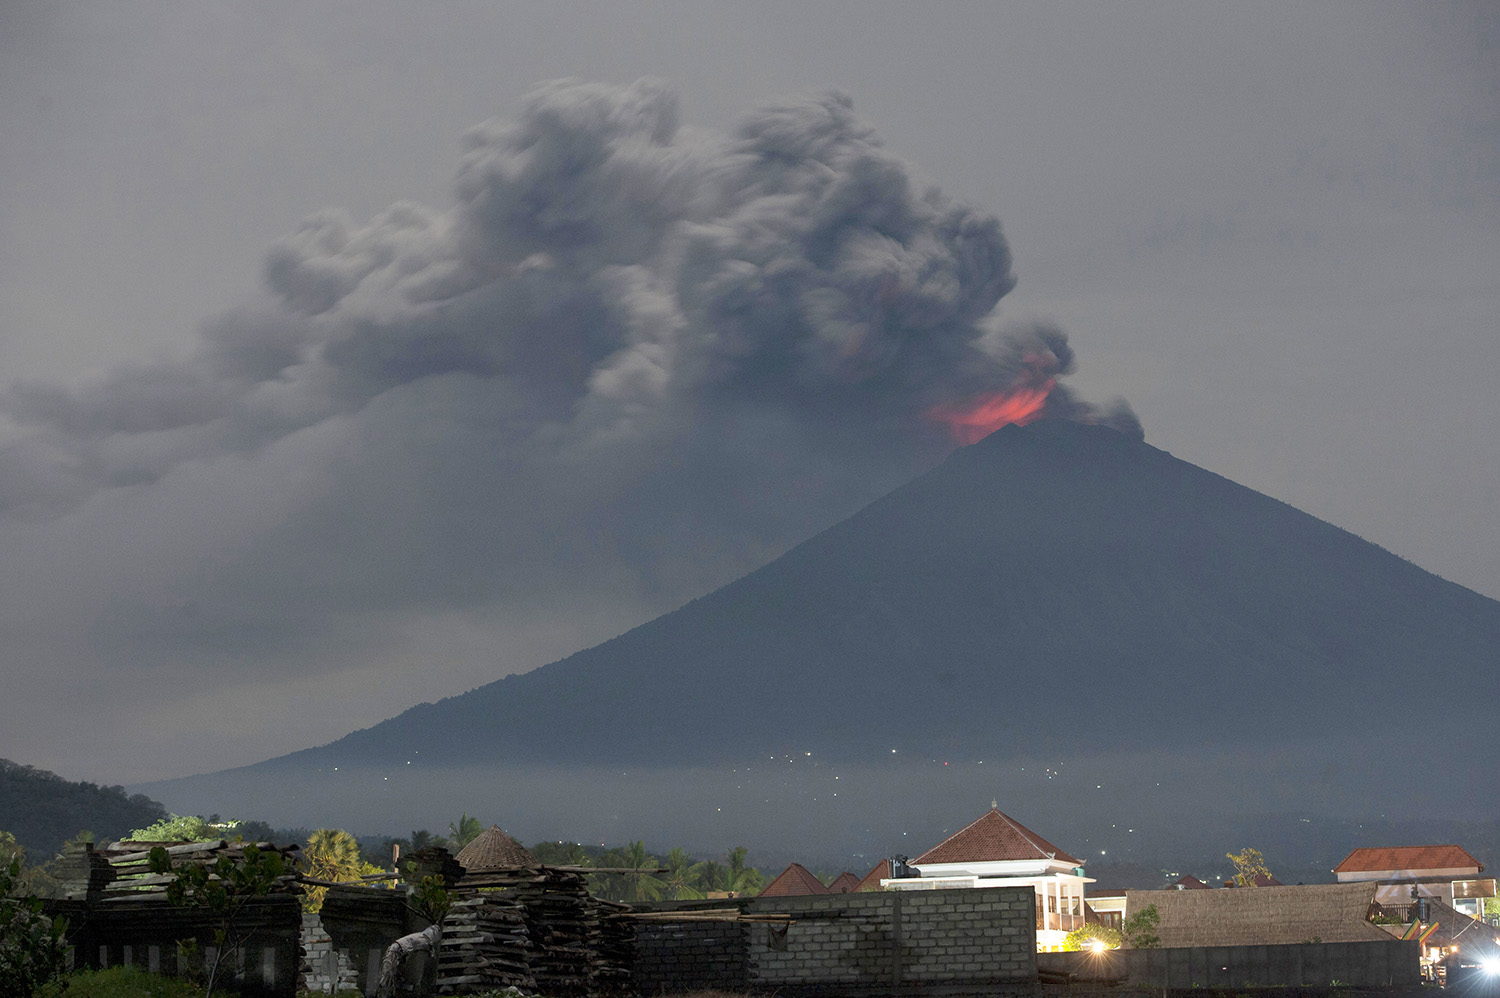 Warga Sekitar Gunung Api di Bali: Kami Perlu Mitigasi Bencana